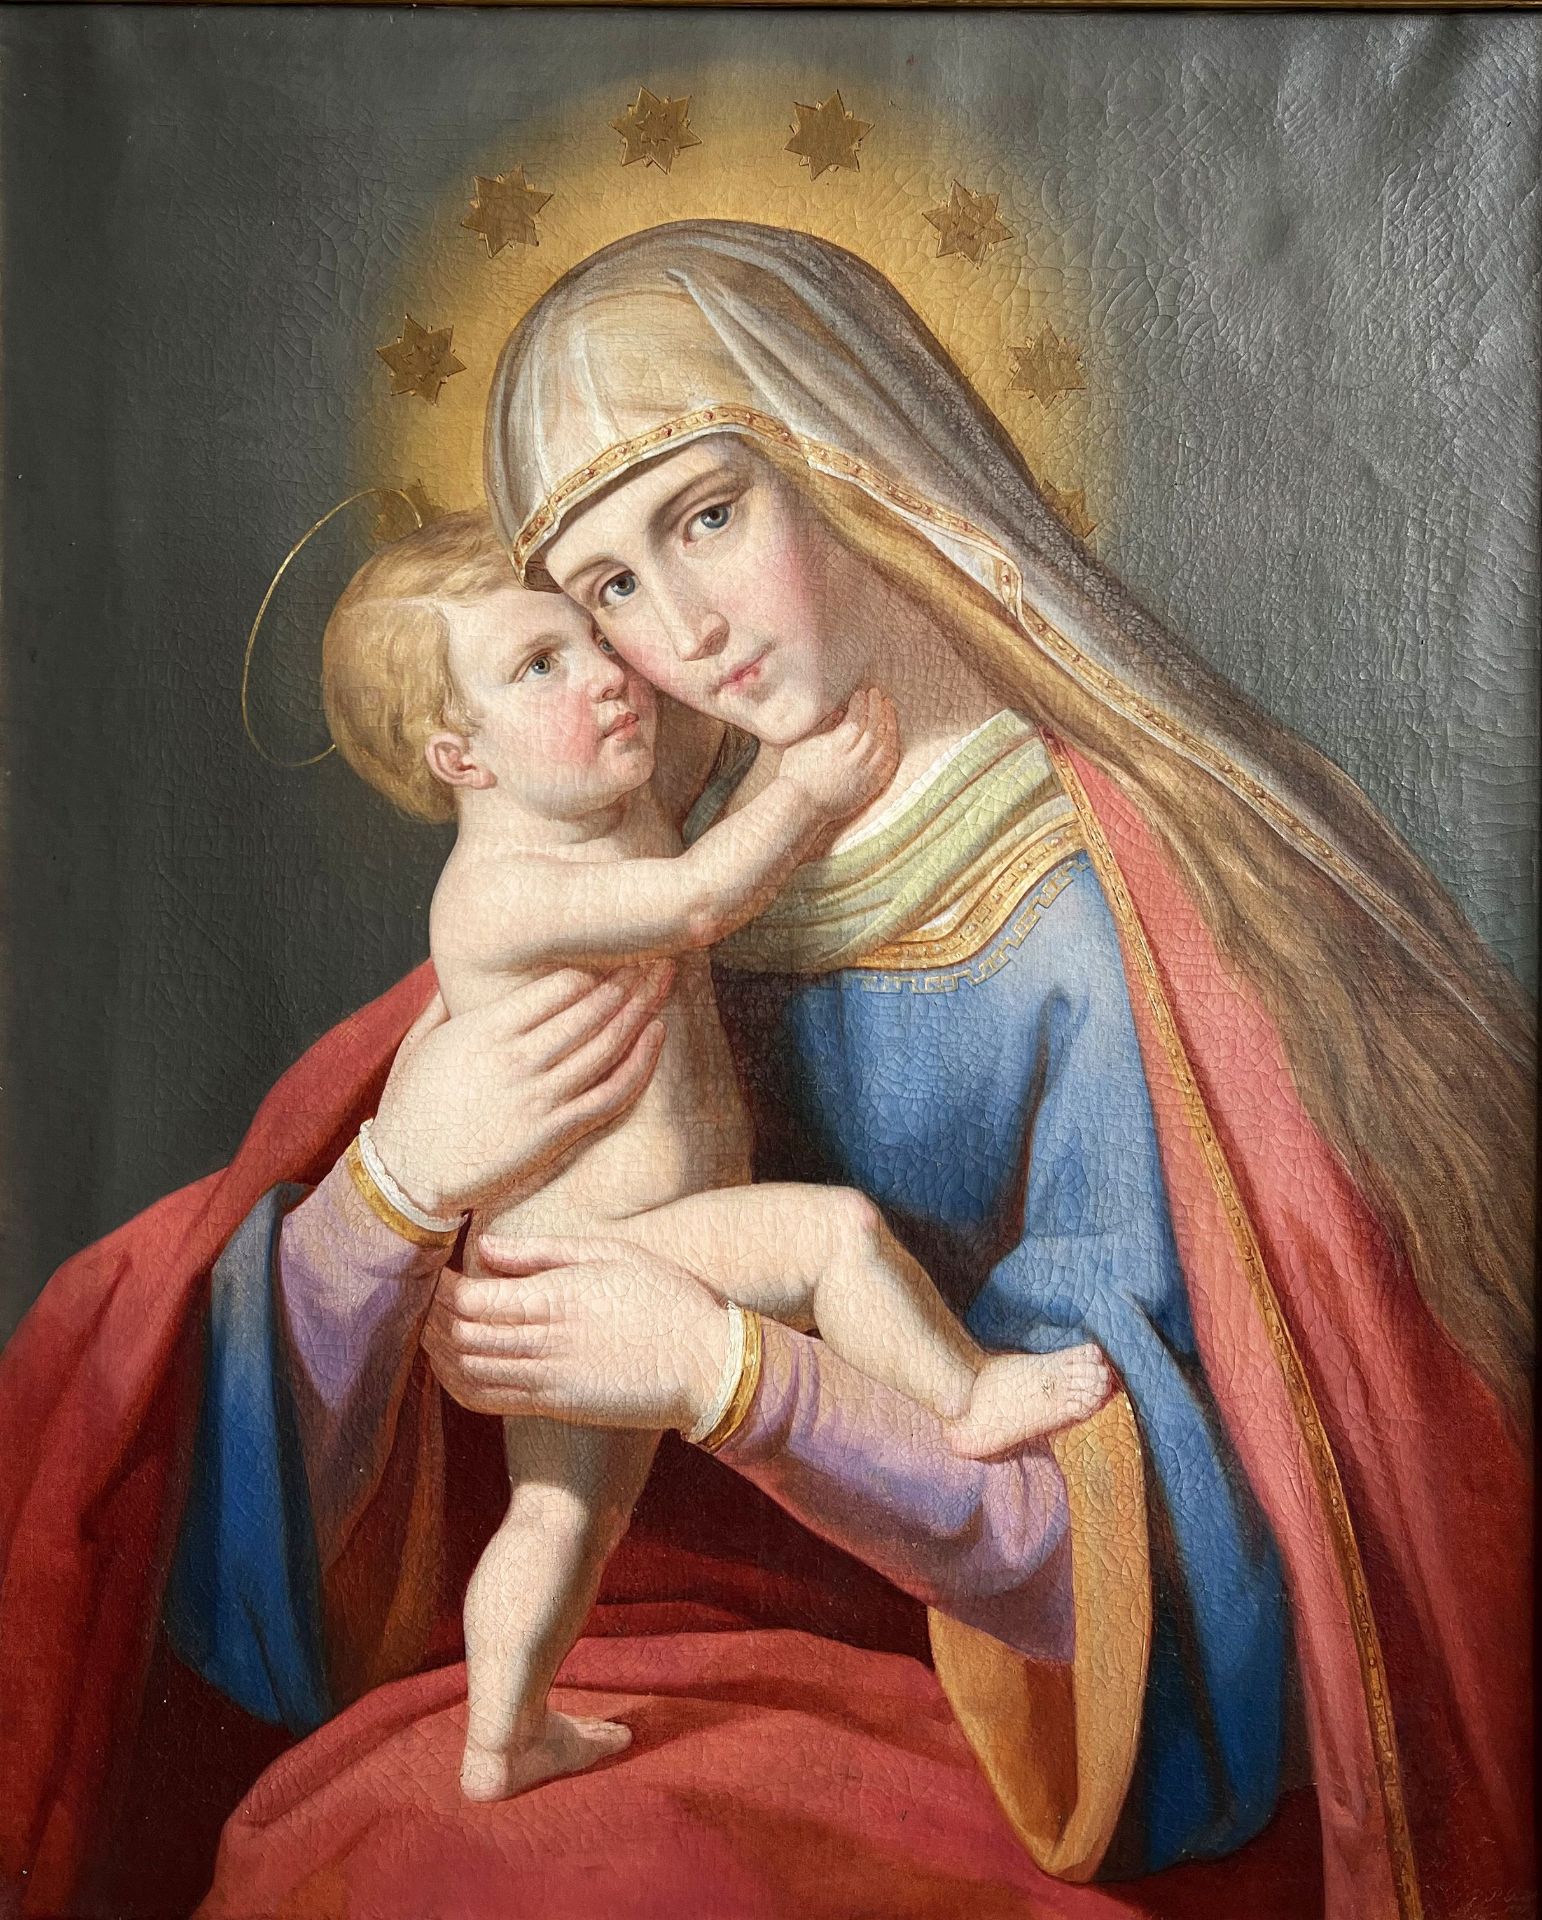 Maria mit dem Jeusknaben/ St. Mary with baby Jesus. Nazarener bzw Präraffaelitisch, Mitte 19. Jh., - Bild 5 aus 5